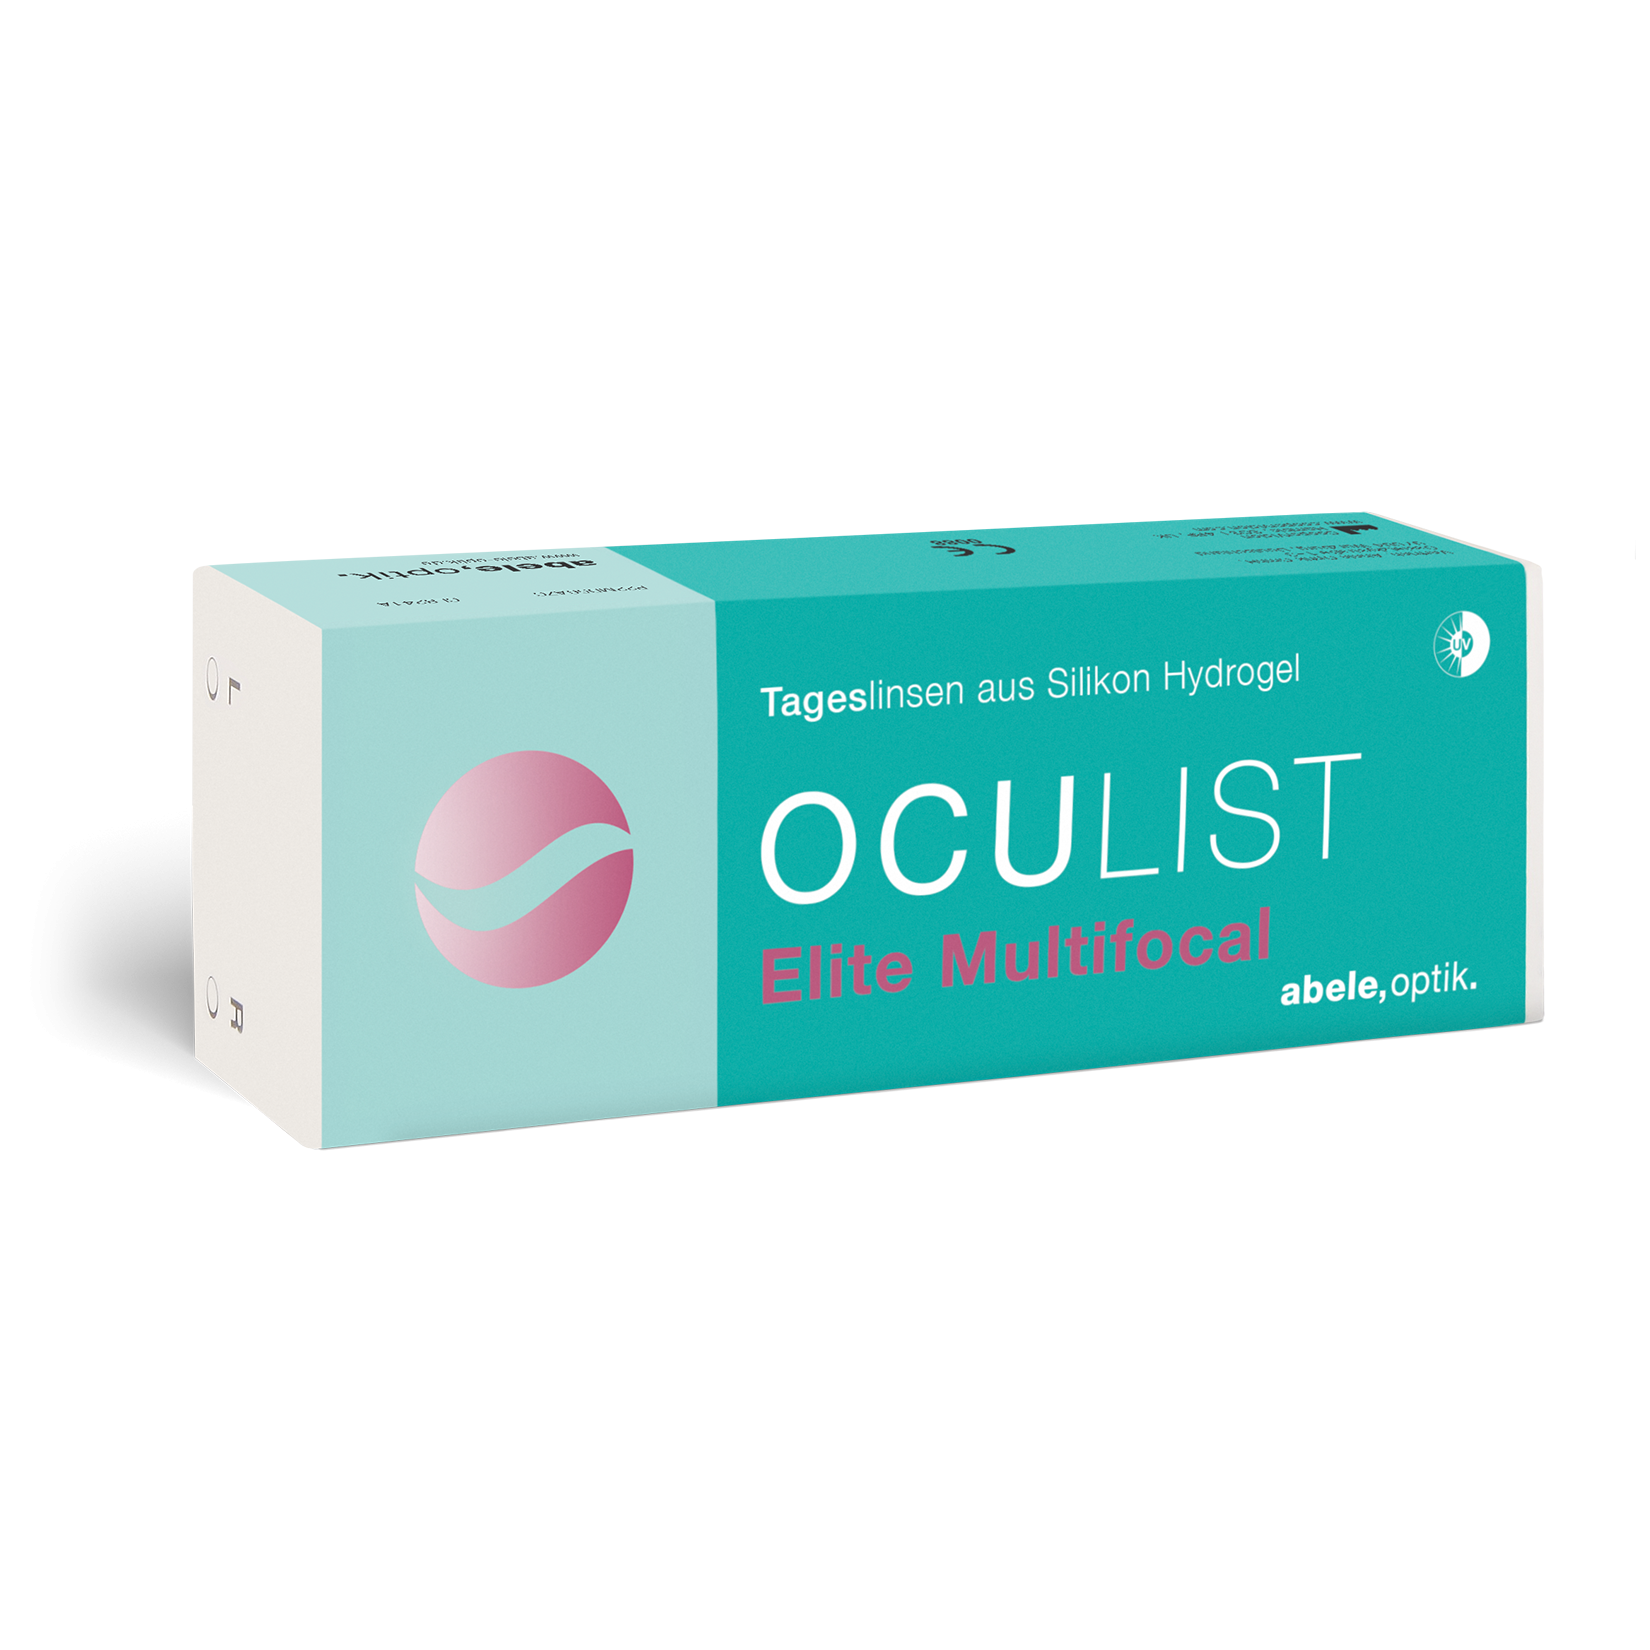 Das Bild zeigt die Verpackung der multifocalen Kontaktlinse Oculist Elite .